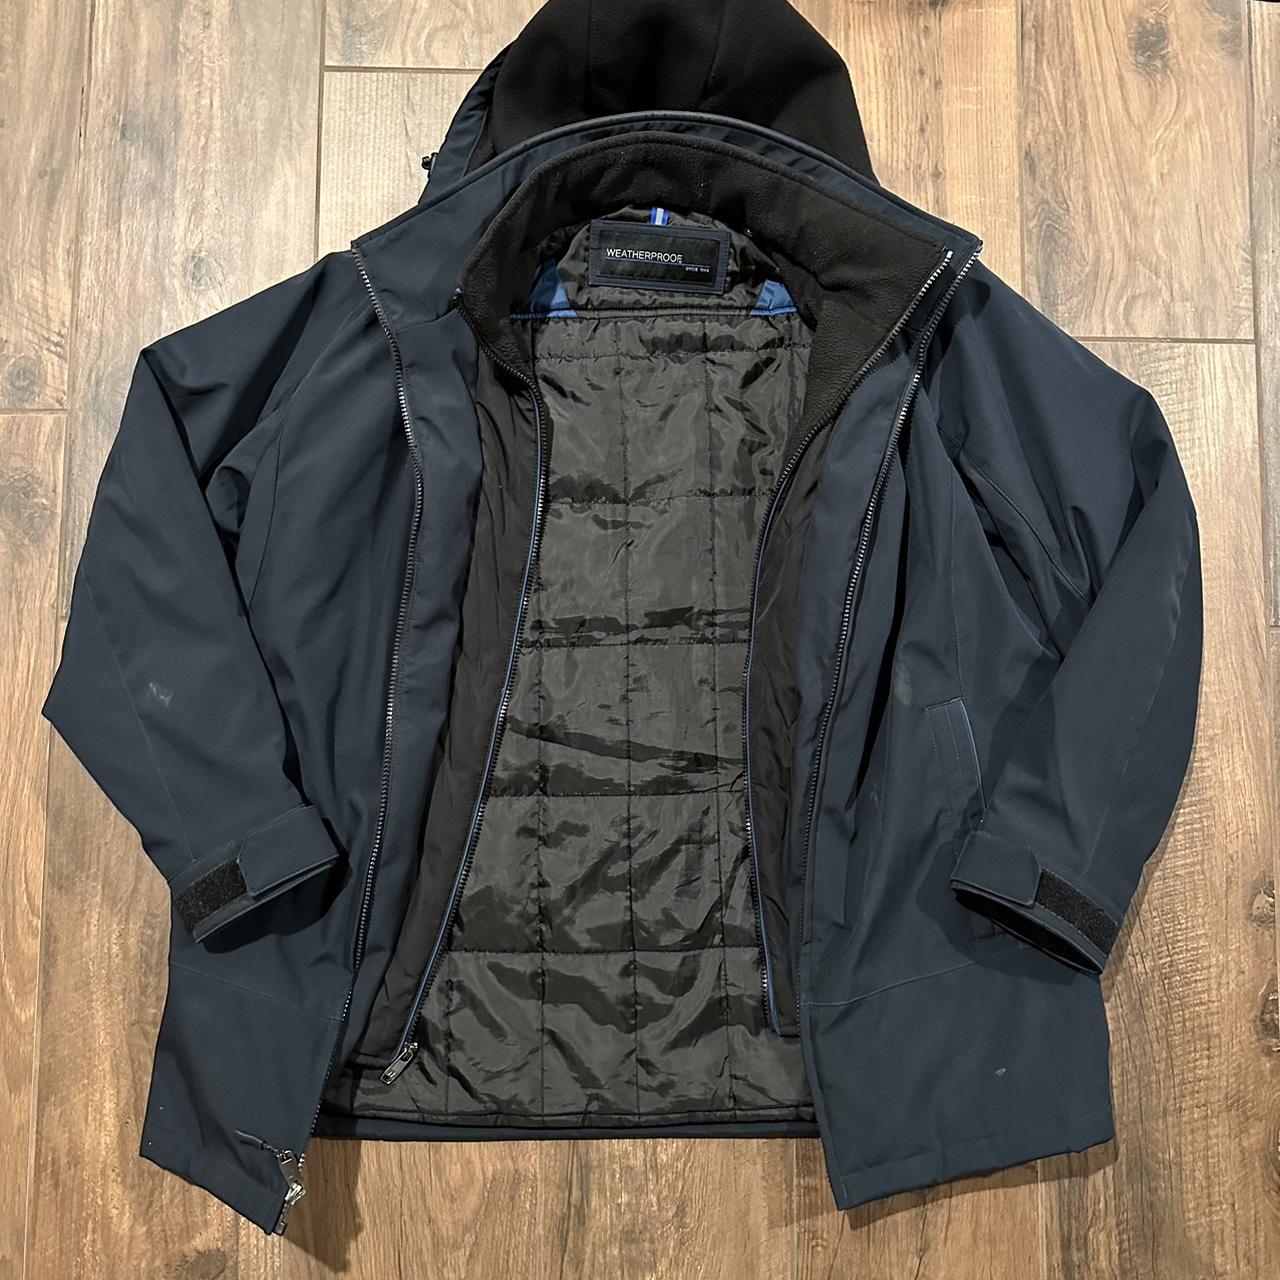 Original Weatherproof Double Layered Jacket Dark... - Depop